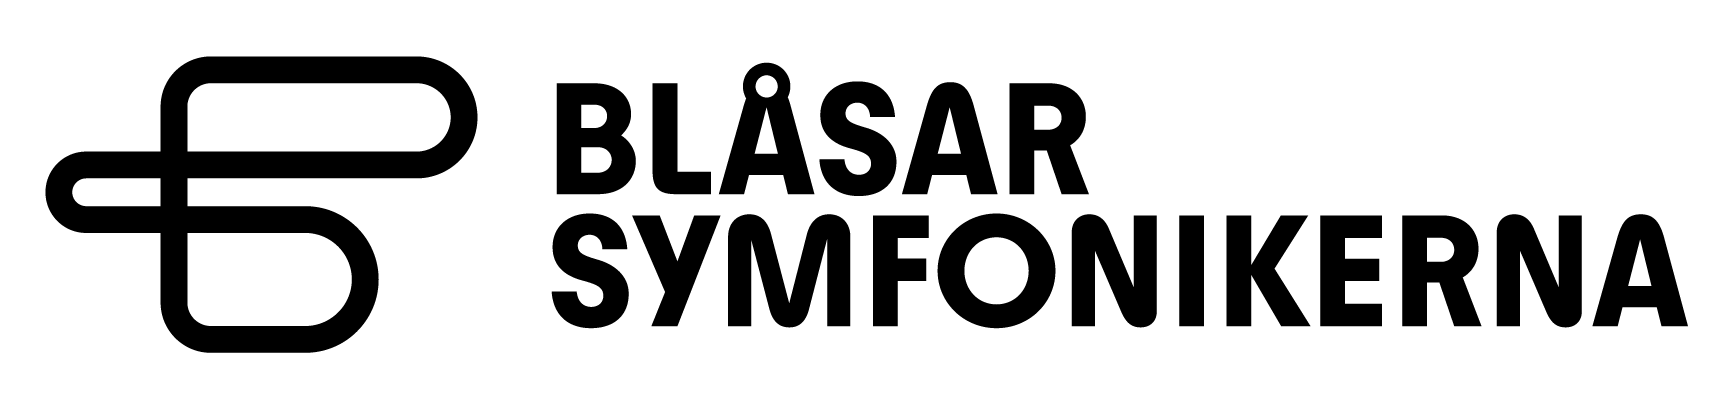 Blåsarsymfonikerna logotyp